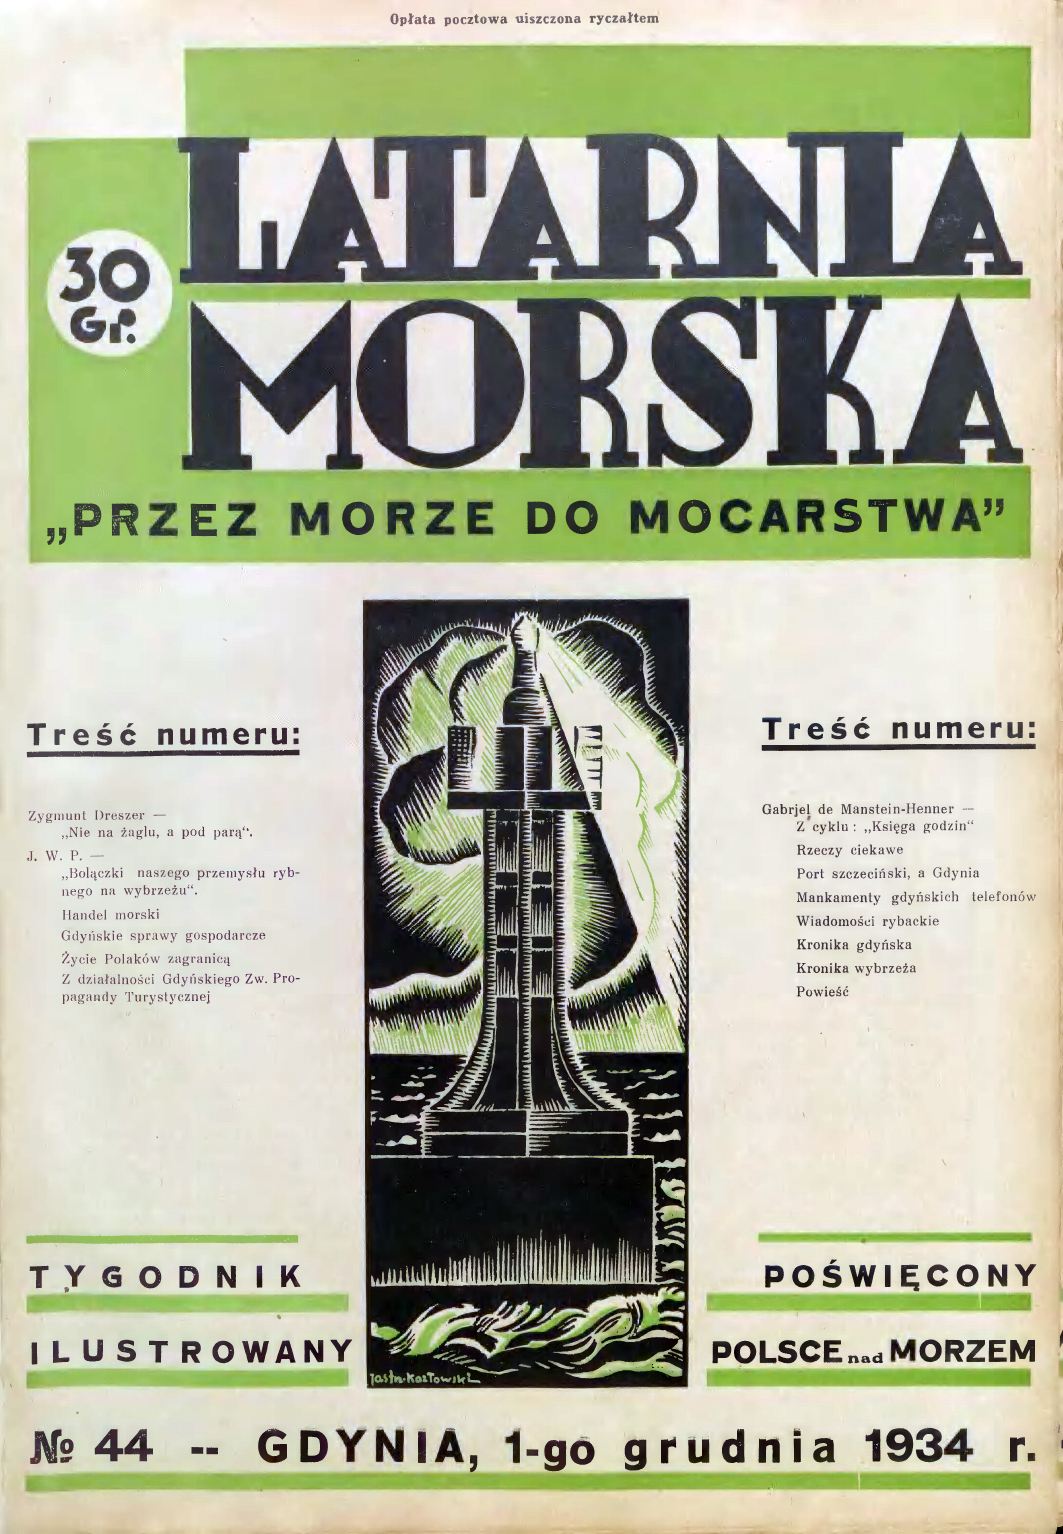 Latarnia Morska: tygodnik ilustrowany poświęcony Polsce nad morzem. – Gdynia : Balto Polak – Zakłady Graficzne i Wydawnicze, 1934, nr 44